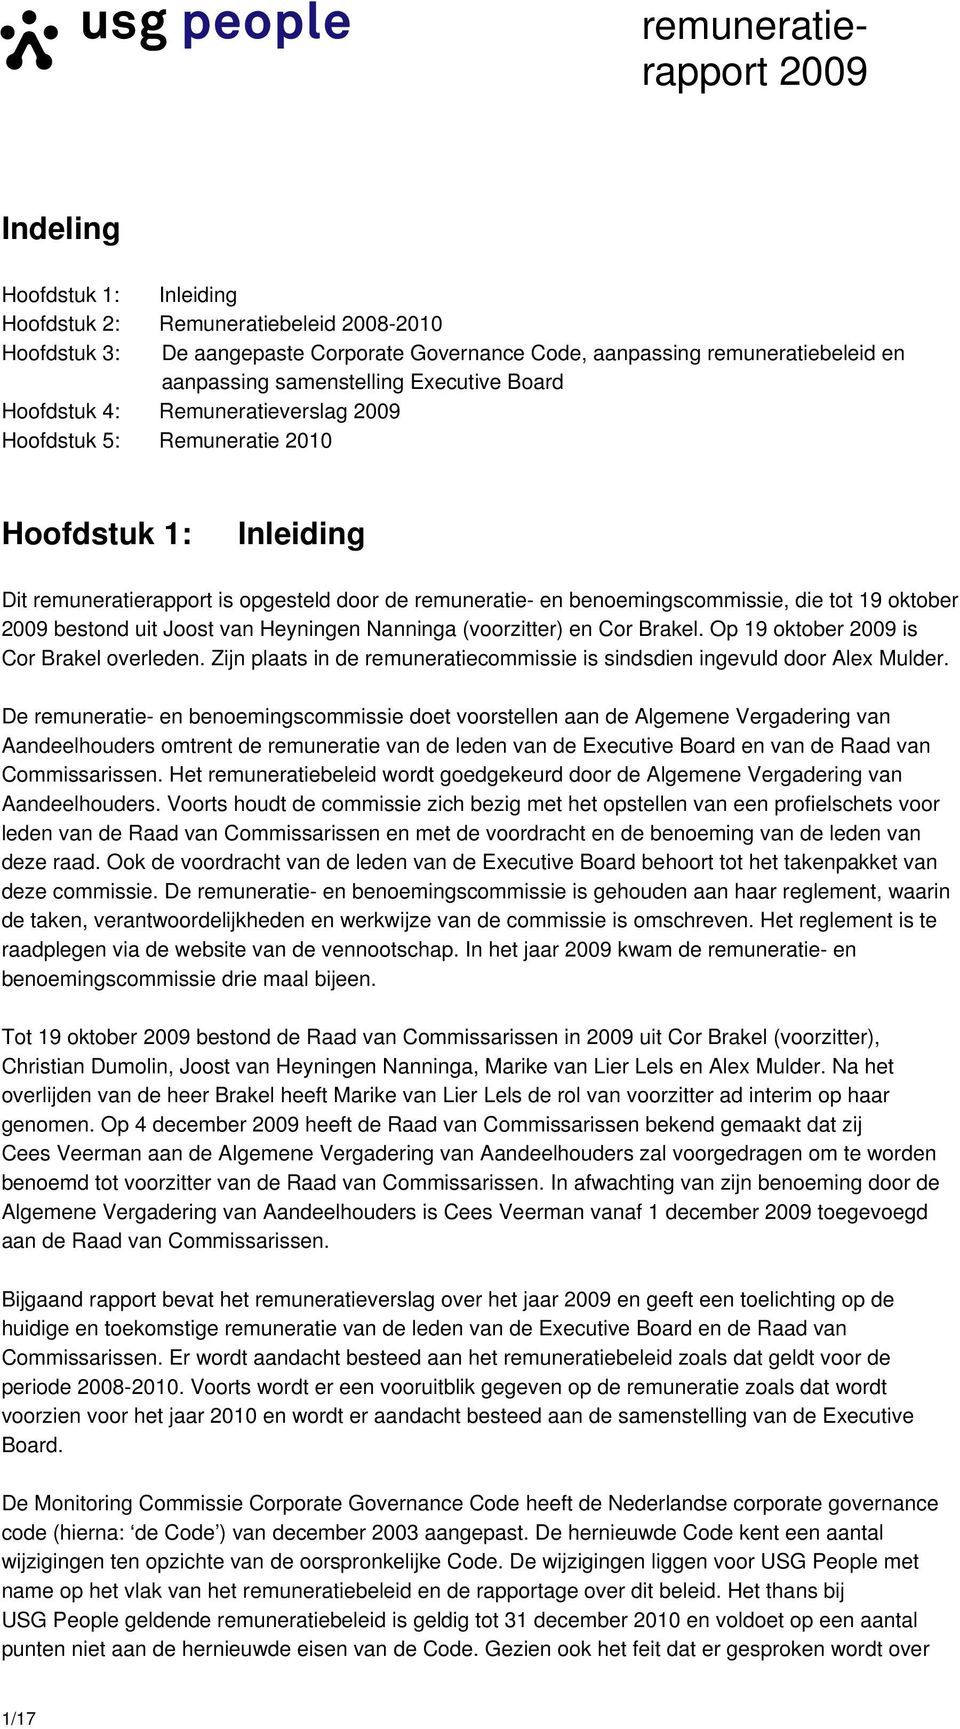 Joost van Heyningen Nanninga (voorzitter) en Cor Brakel. Op 19 oktober is Cor Brakel overleden. Zijn plaats in de remuneratiecommissie is sindsdien ingevuld door Alex Mulder.